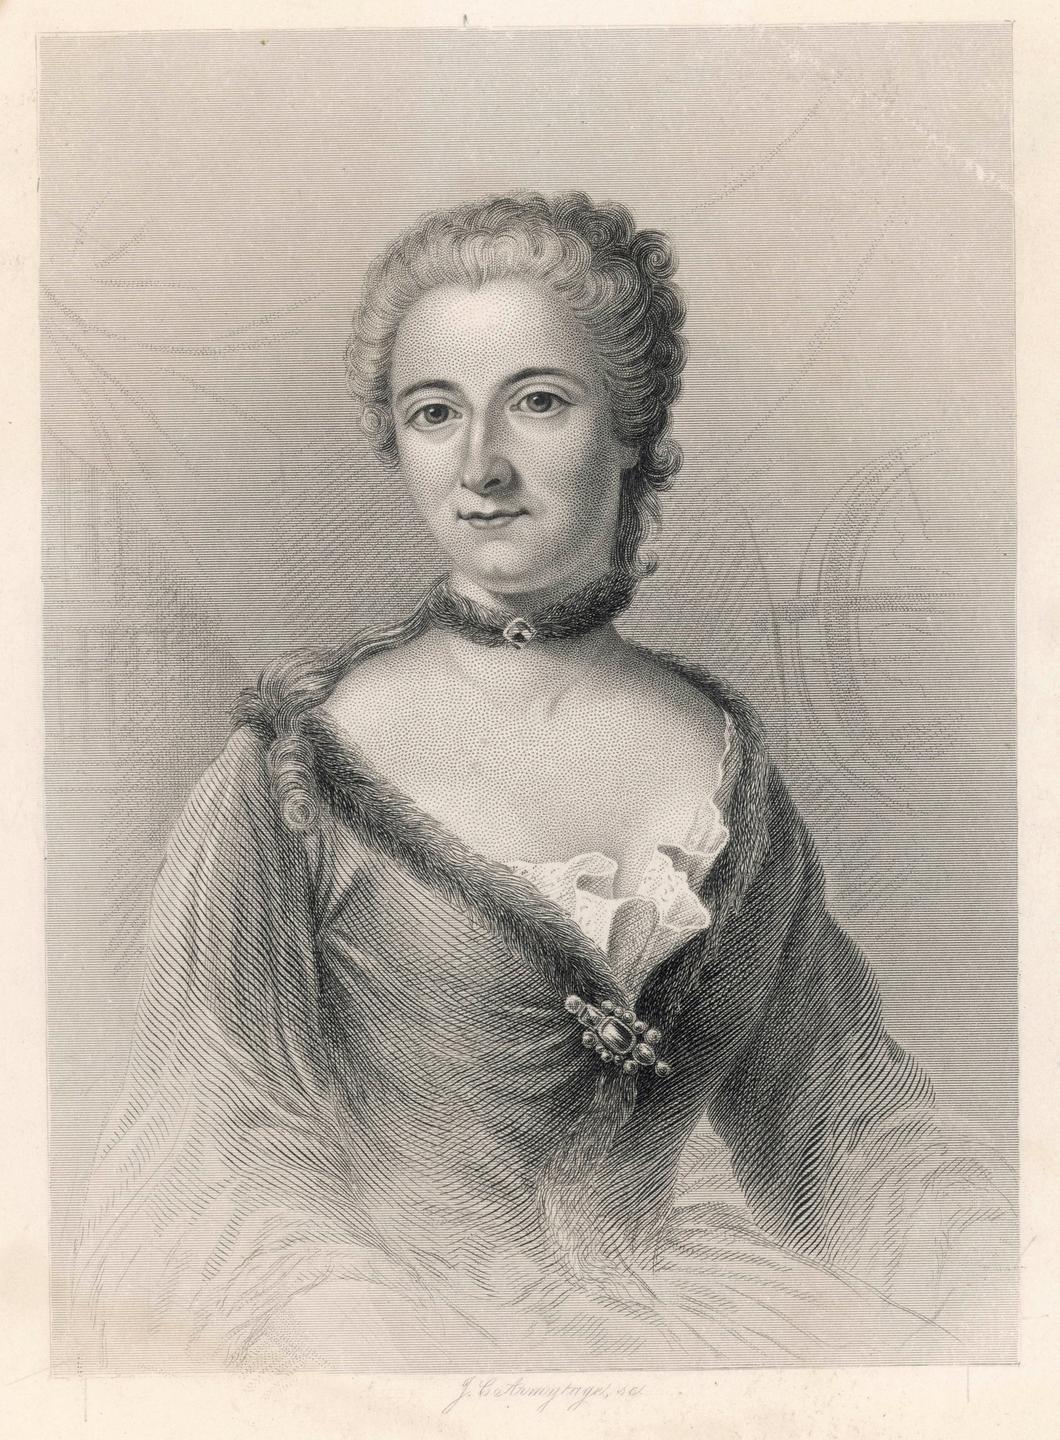 Zeitgenössische Darstellung der Philiosophin Emilie du Châtelets. Eine junge Frau mit langen Haaren und Kleid.